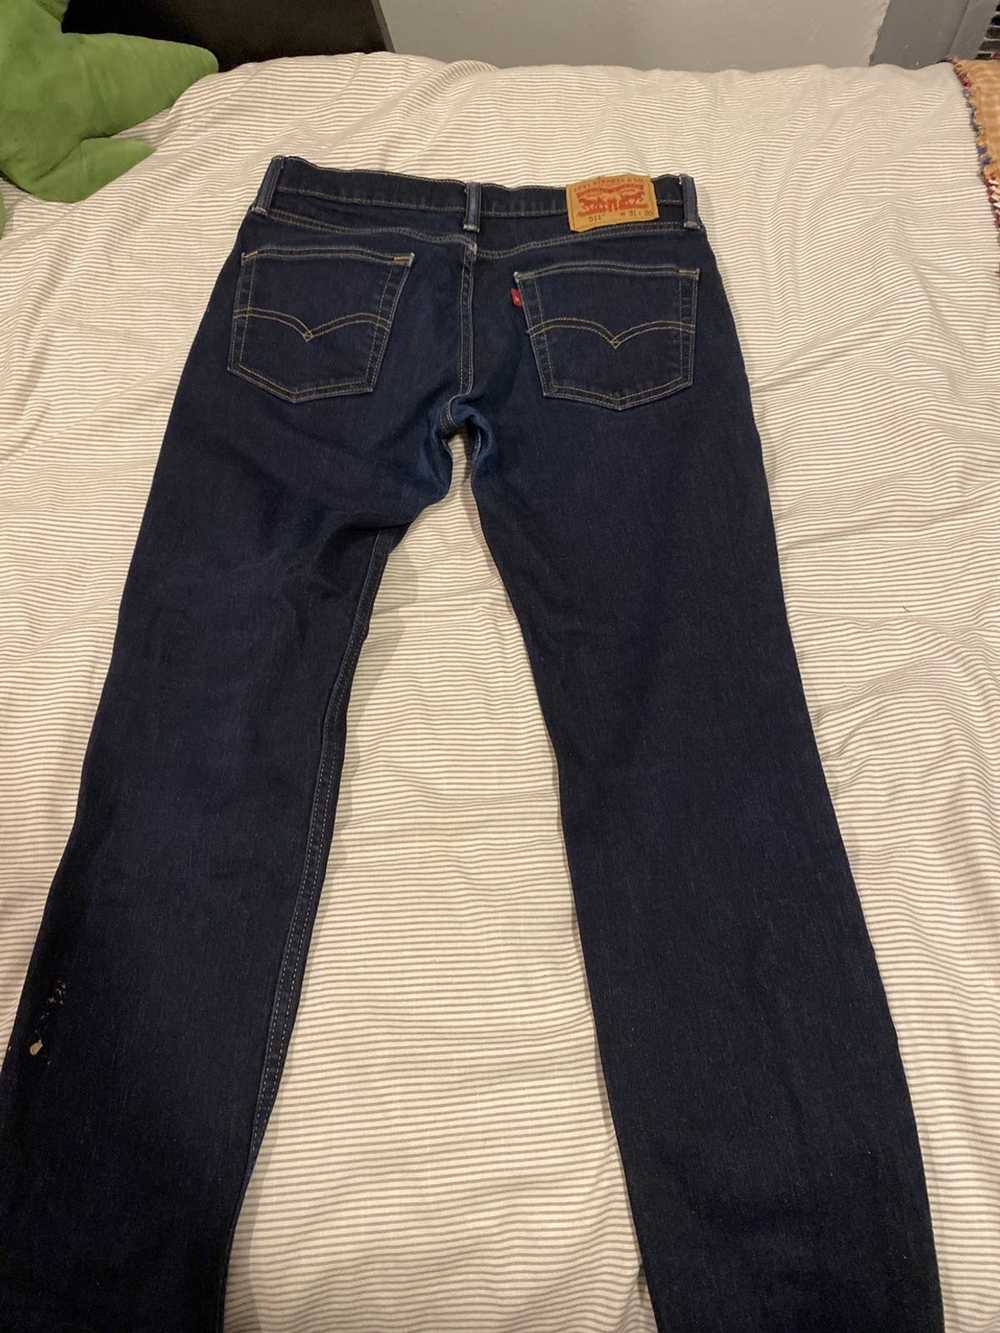 Levi's Slim cut Levi’s jeans - image 4